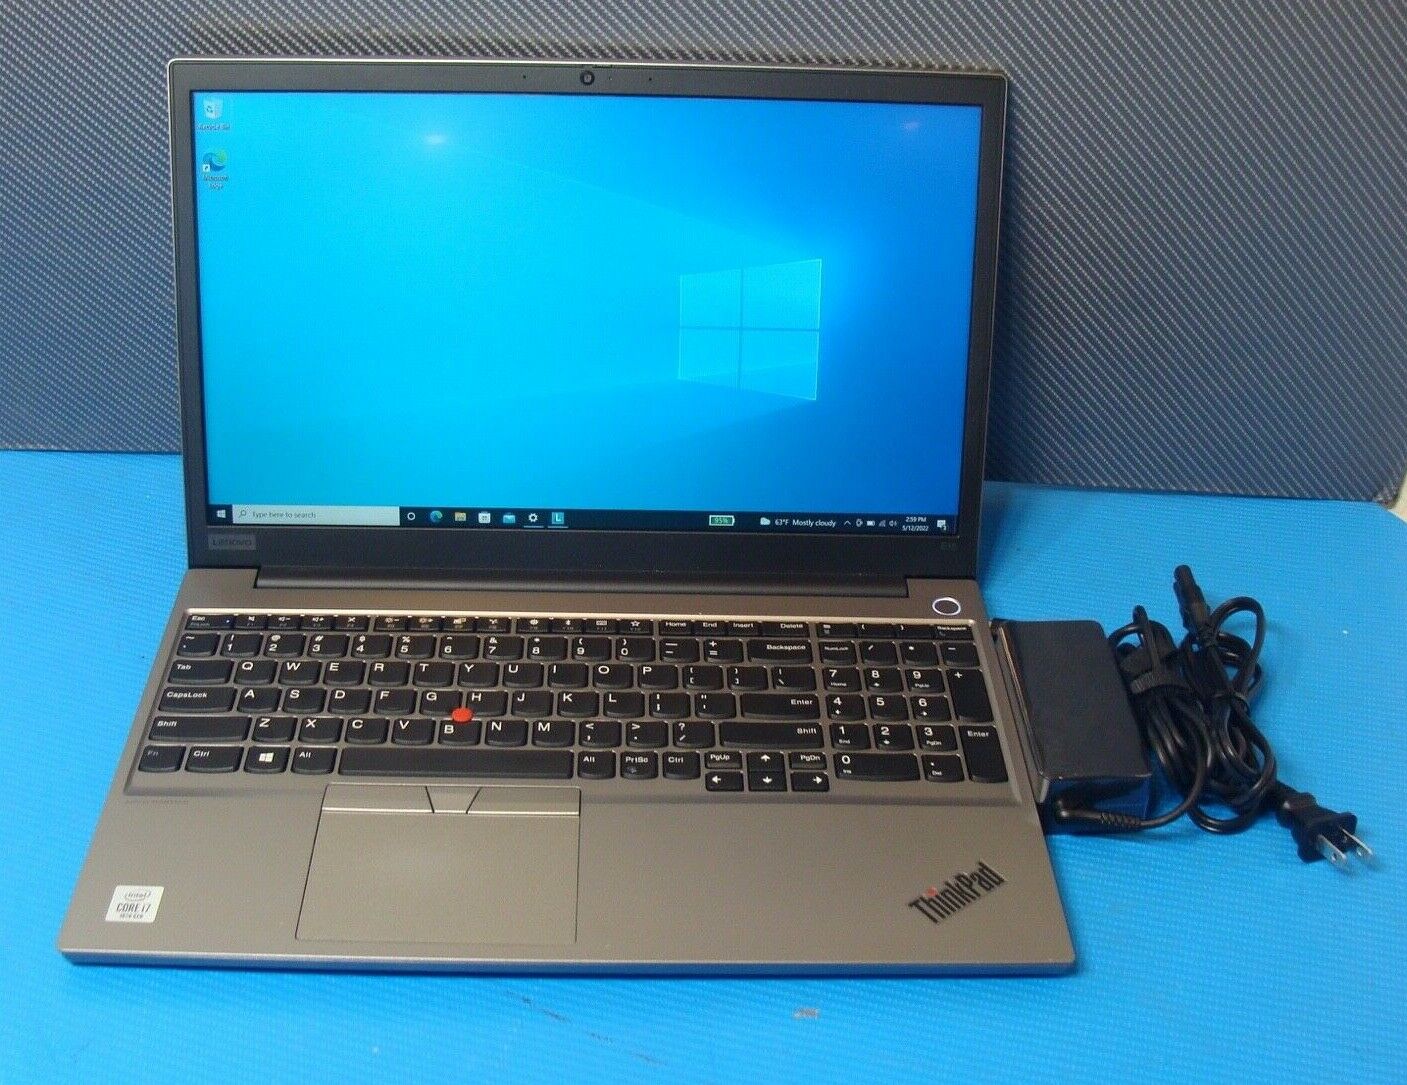 Lenovo ThinkPad E15 15.6